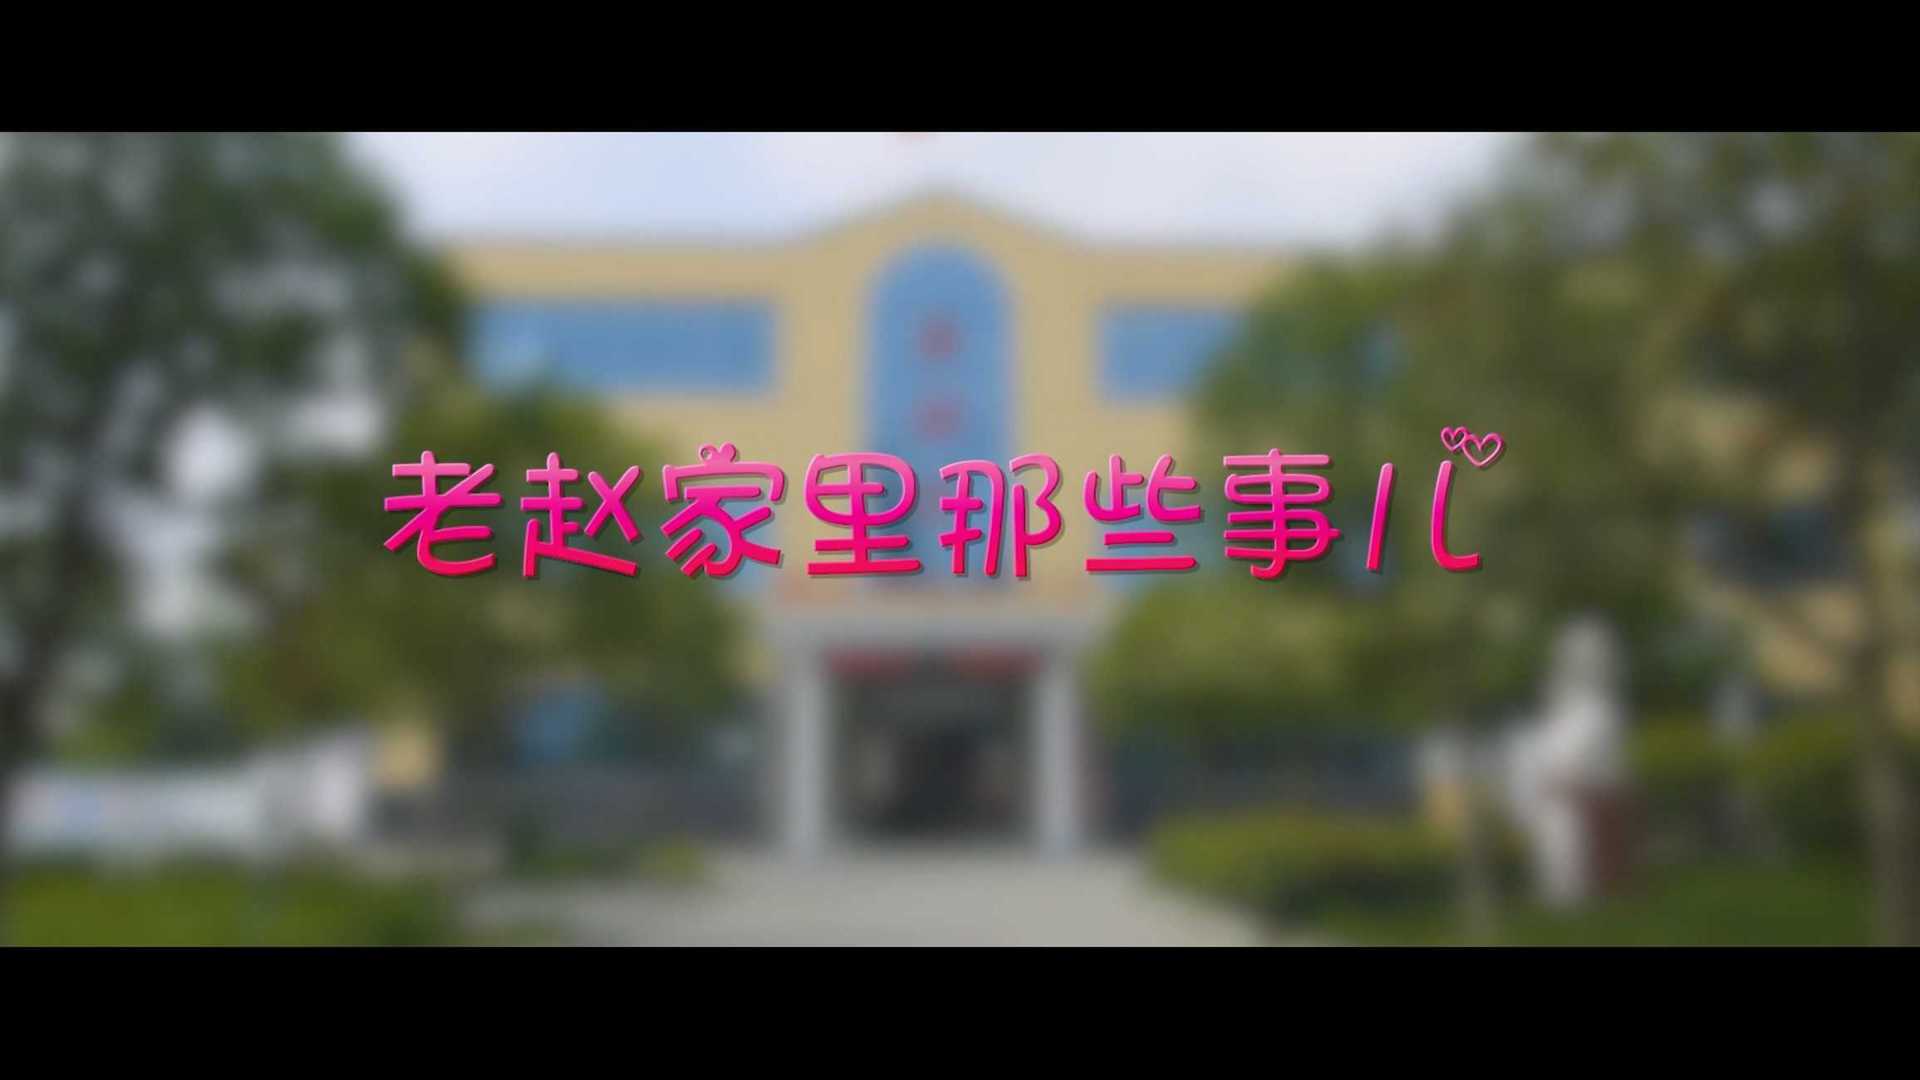 微视频《老赵家里那些事儿》｜ 襄阳司法局东津司法所